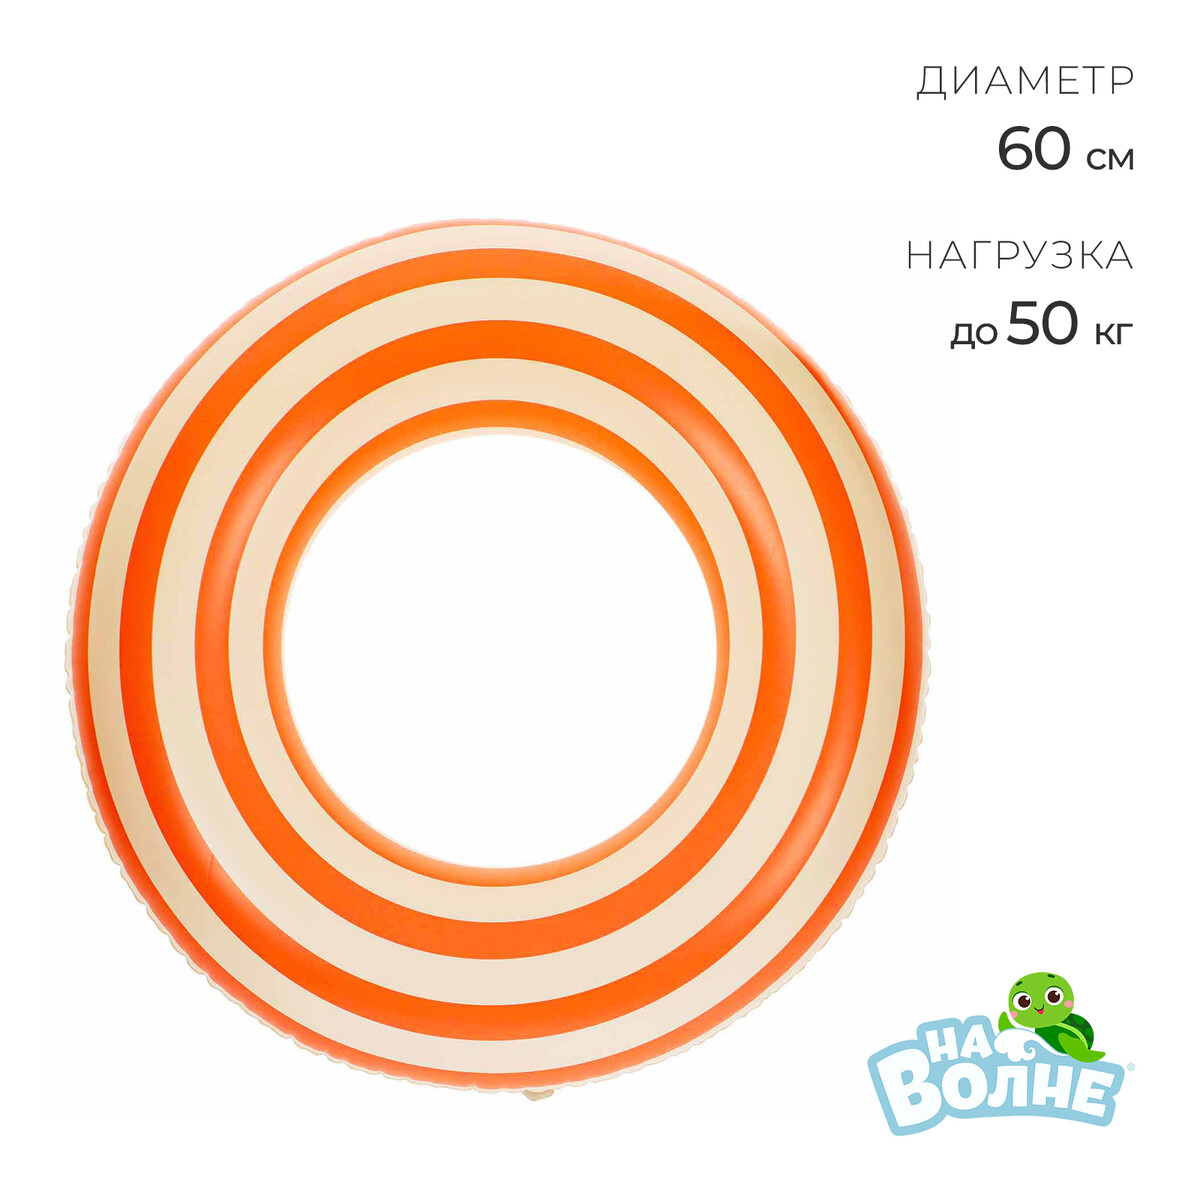 Круг для плавания 60 см, цвет белый/оранжевый круг для плавания 60 см белый оранжевый